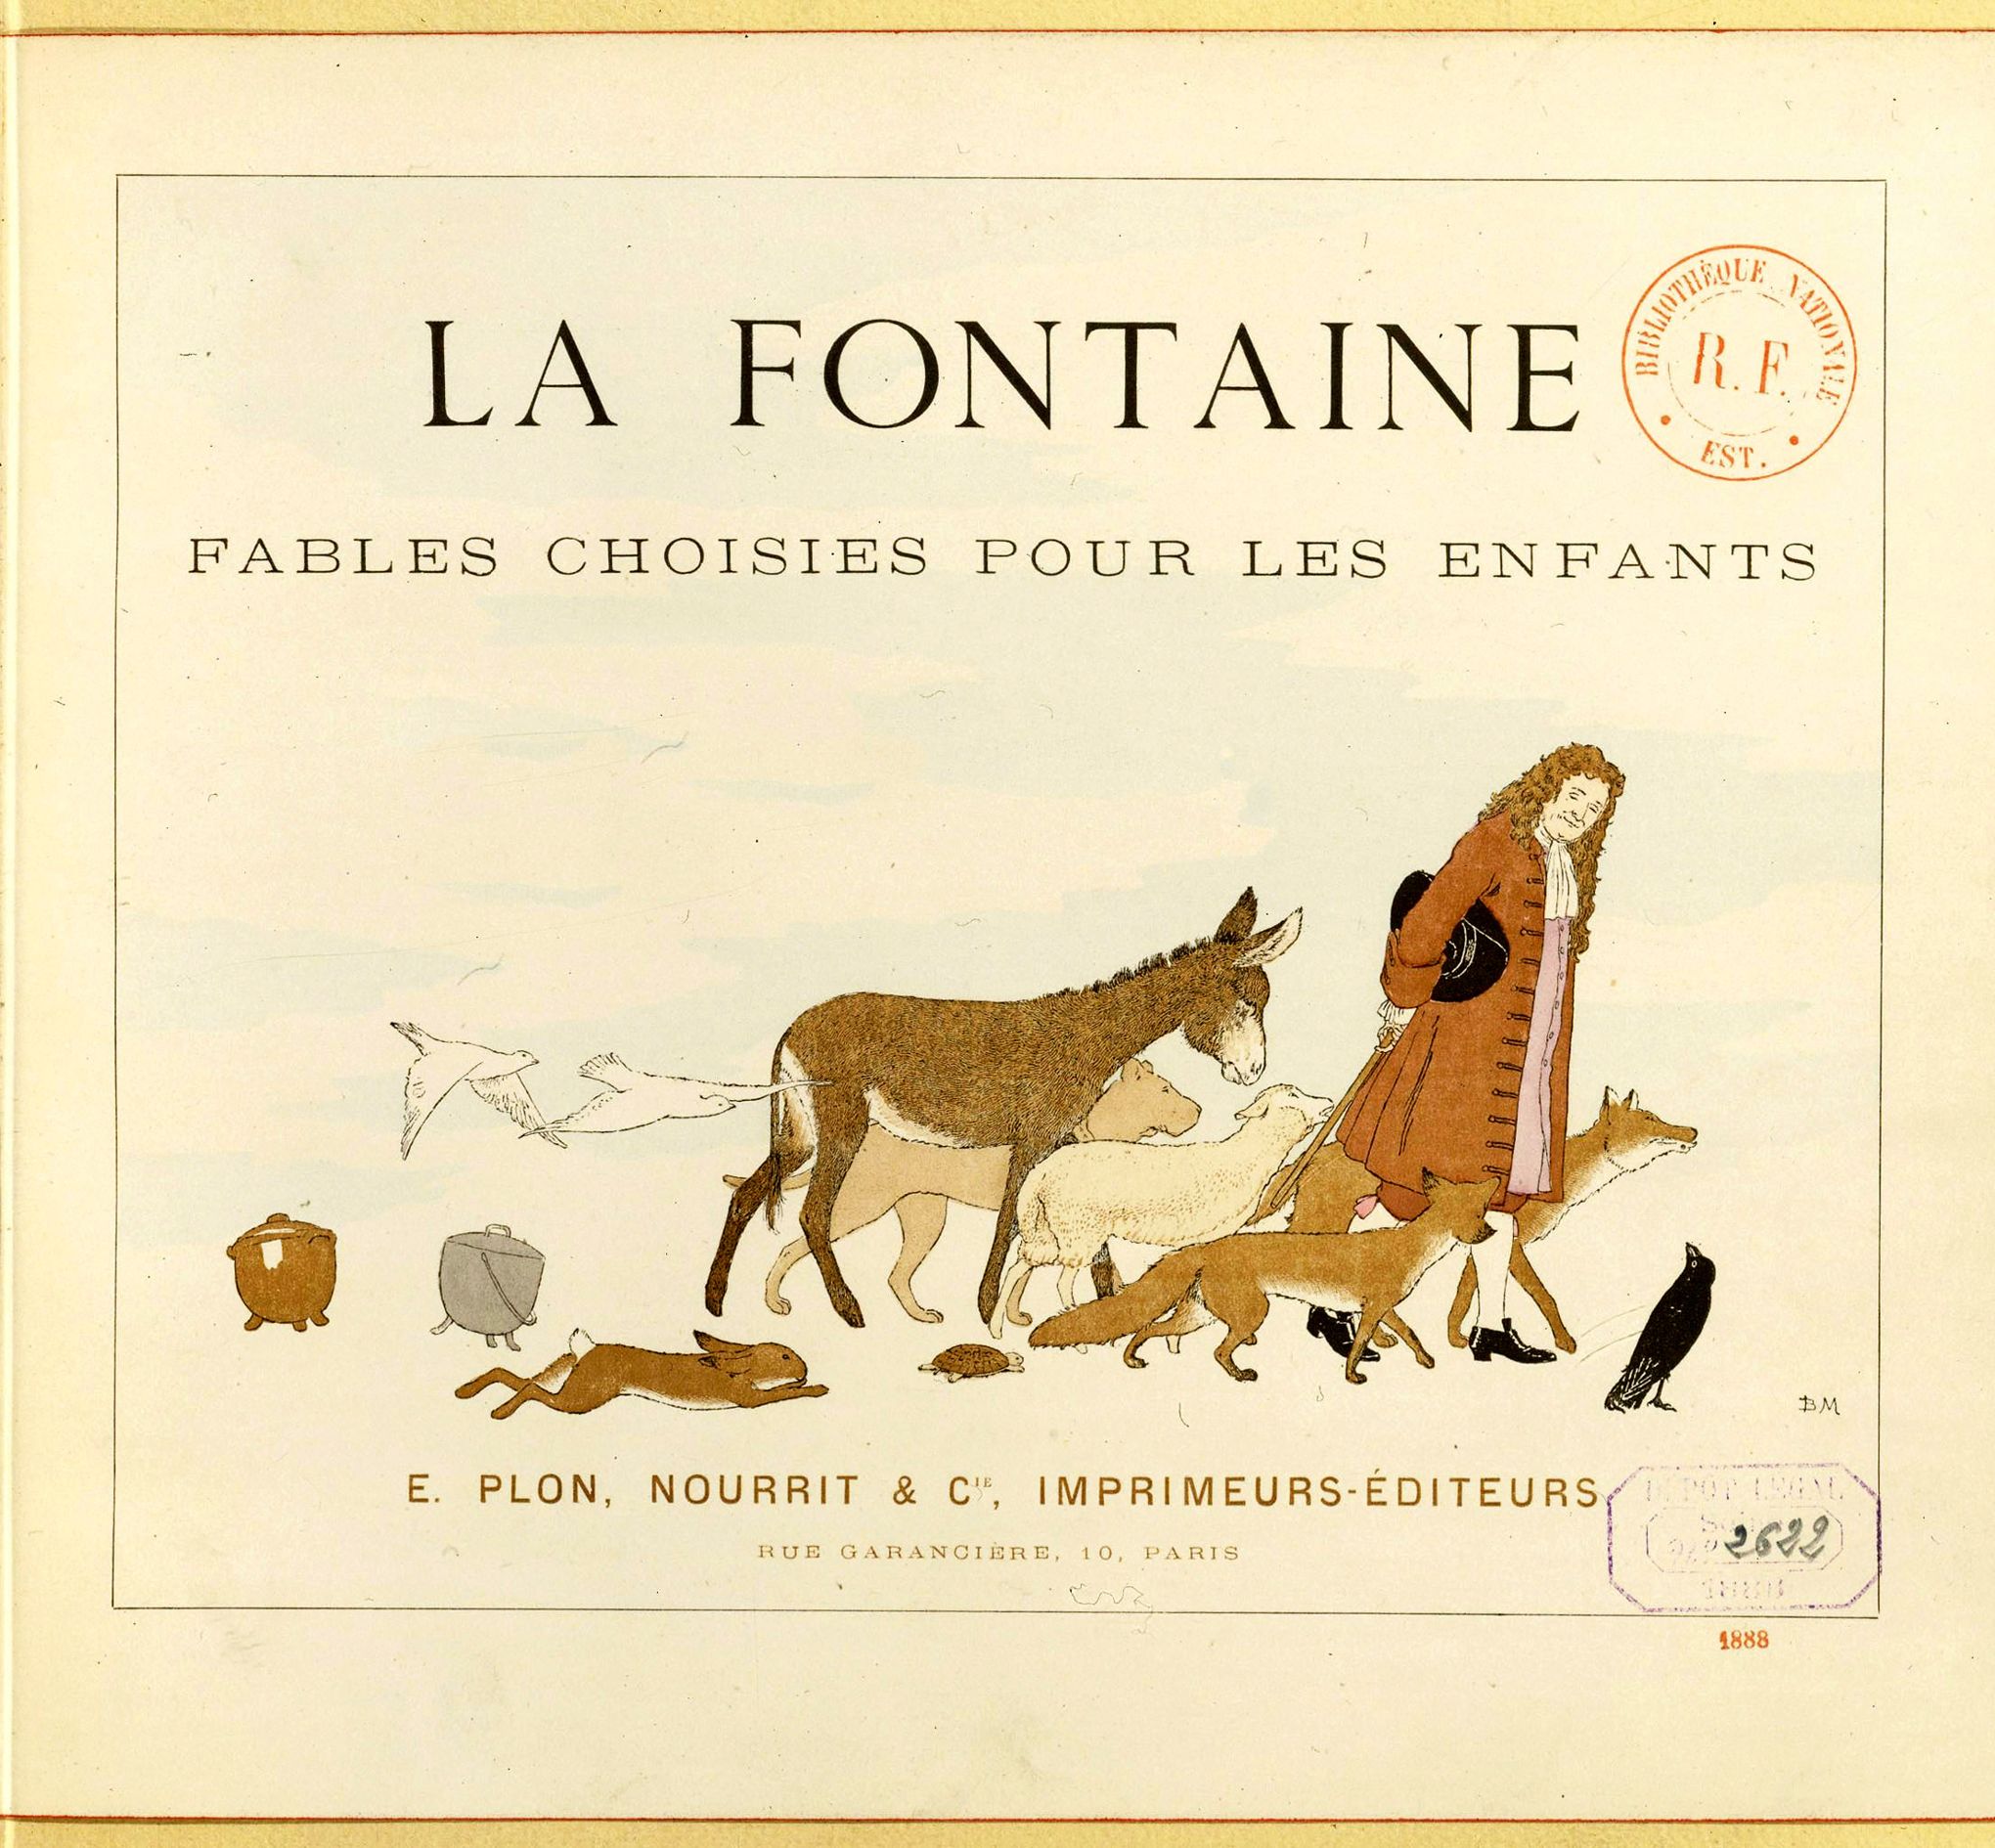 Jean de La Fontaine en dix dates : juin 1667, l'art de la fable renouvelé